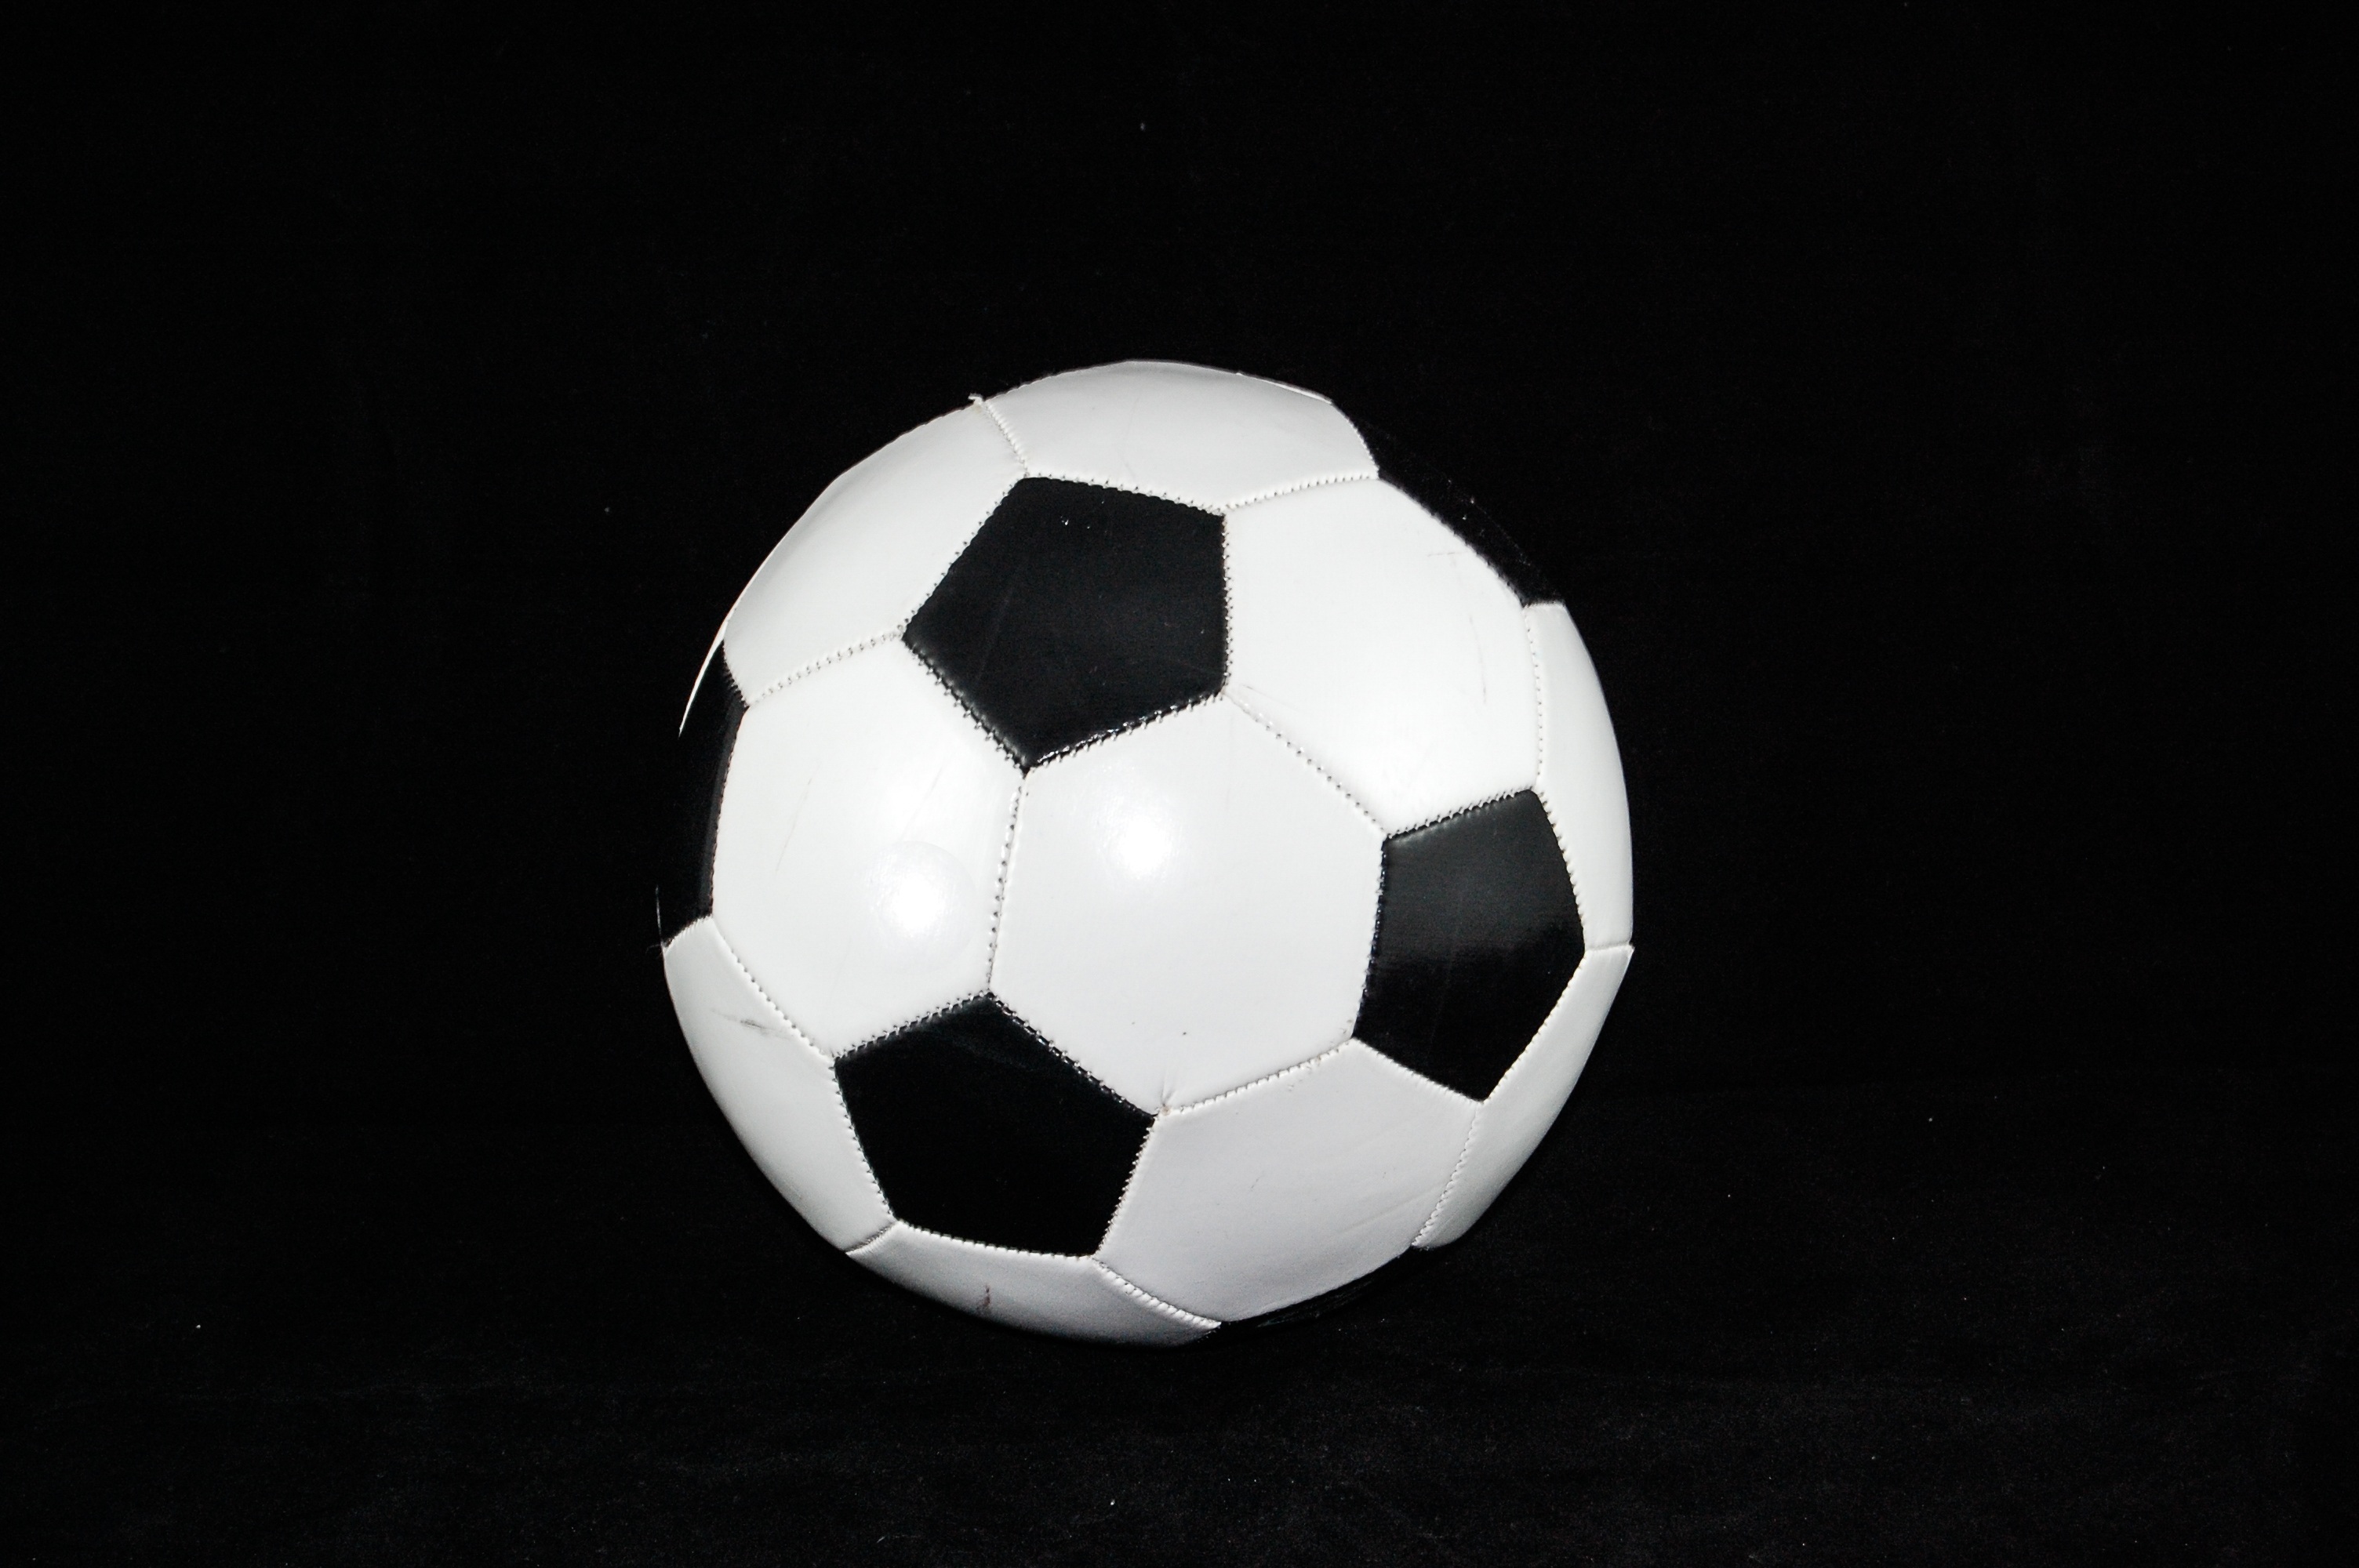 Fondos de Pantalla Balón de Fútbol Blanco y Negro, Imágenes y Fotos Gratis